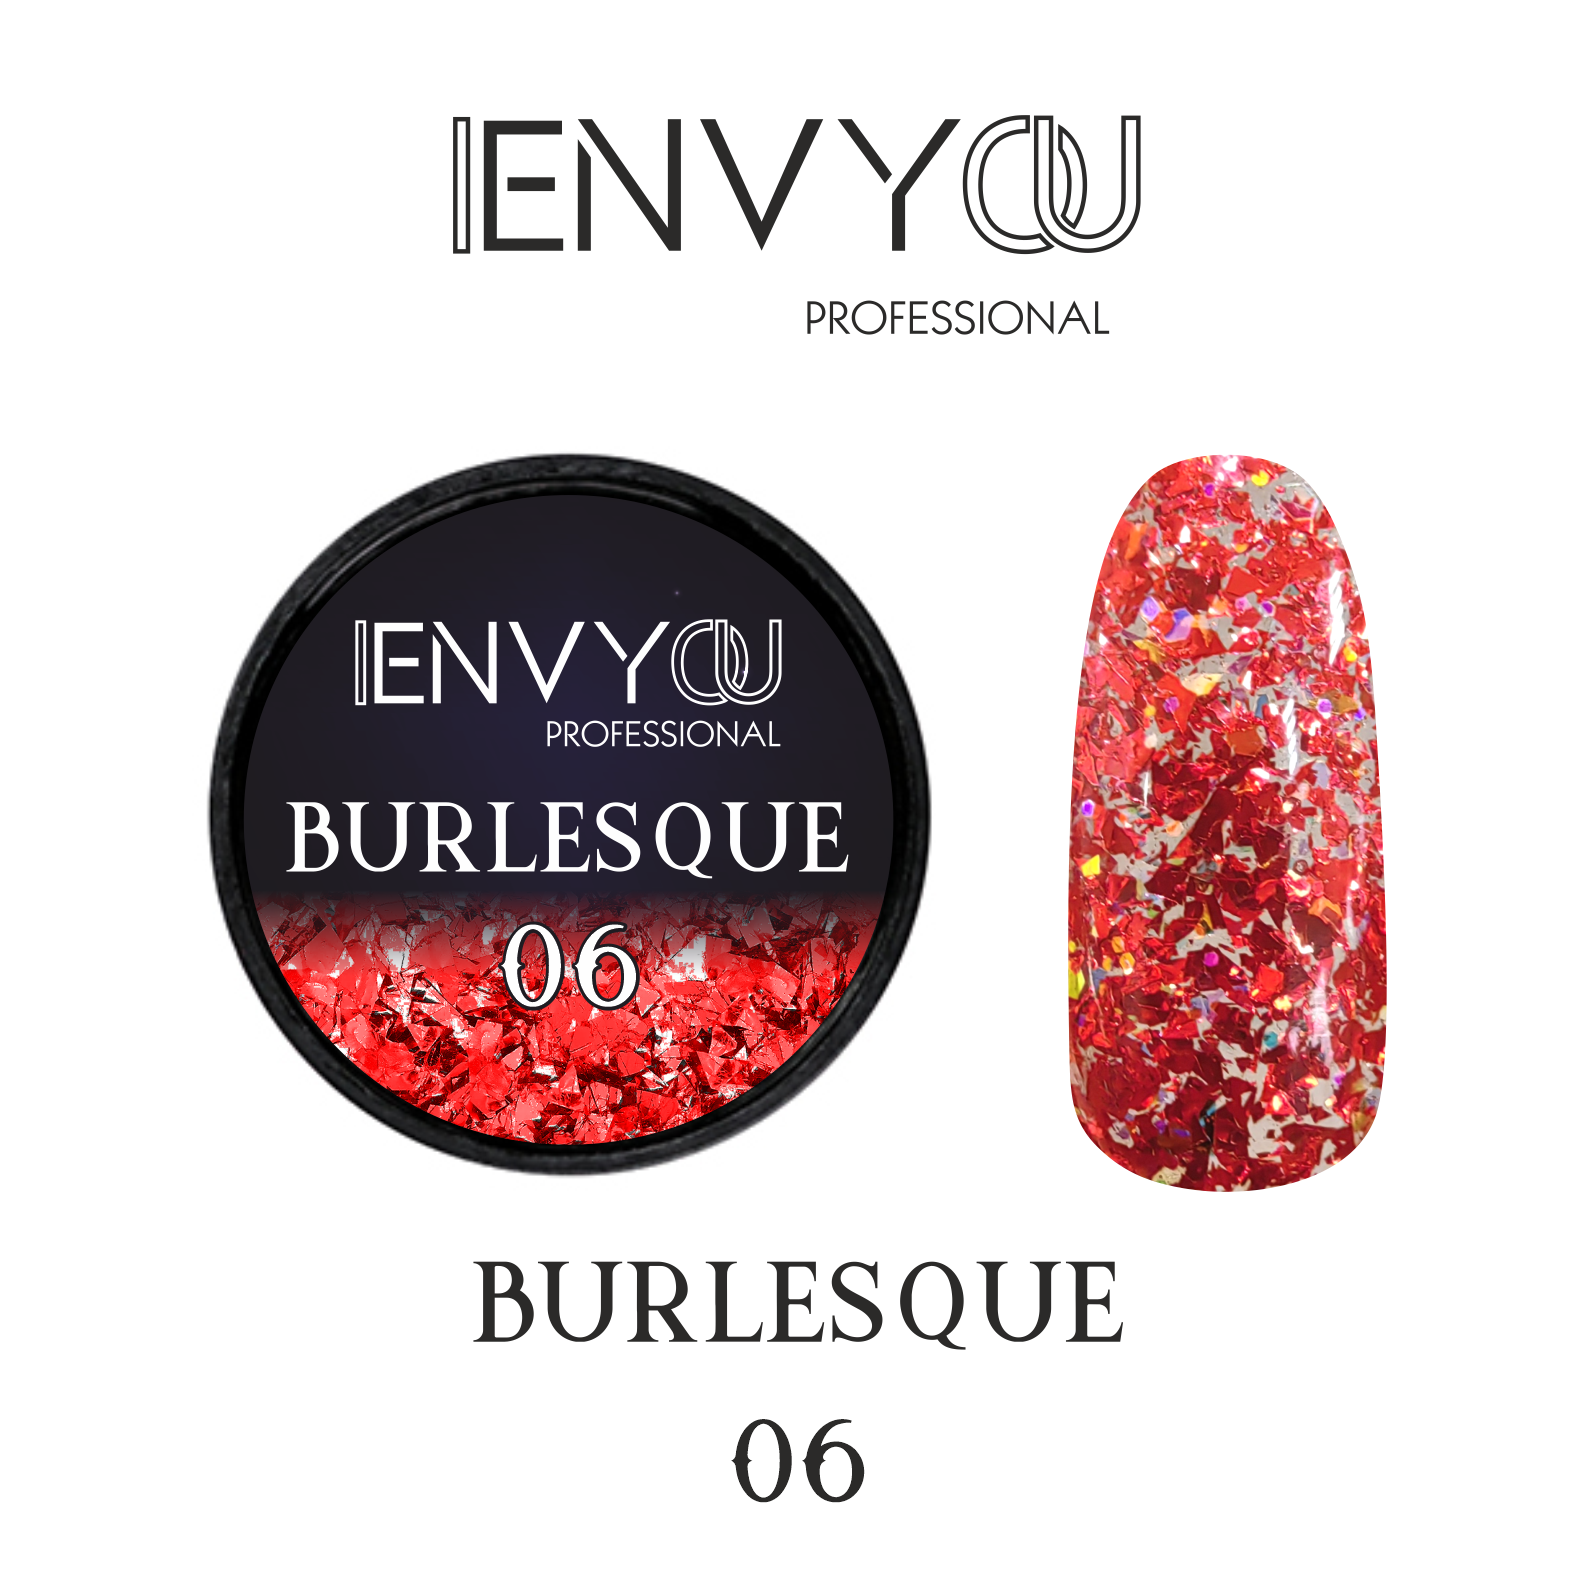 ENVY Burlesque 06 6g